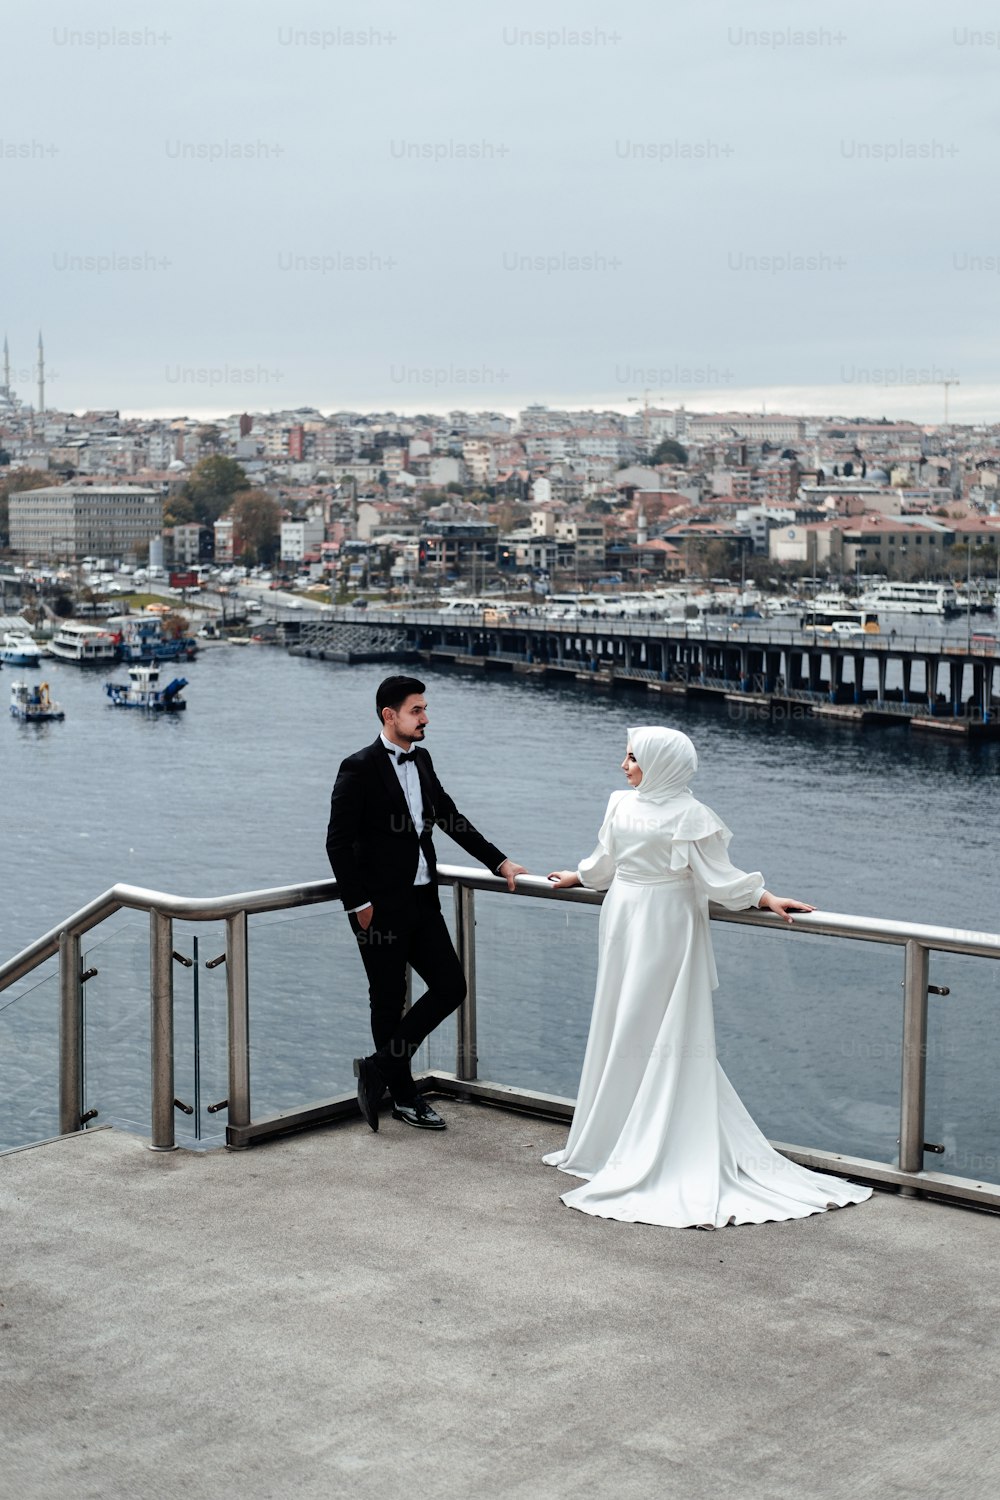 Un hombre y una mujer en traje de boda parados en un puente sobre el agua